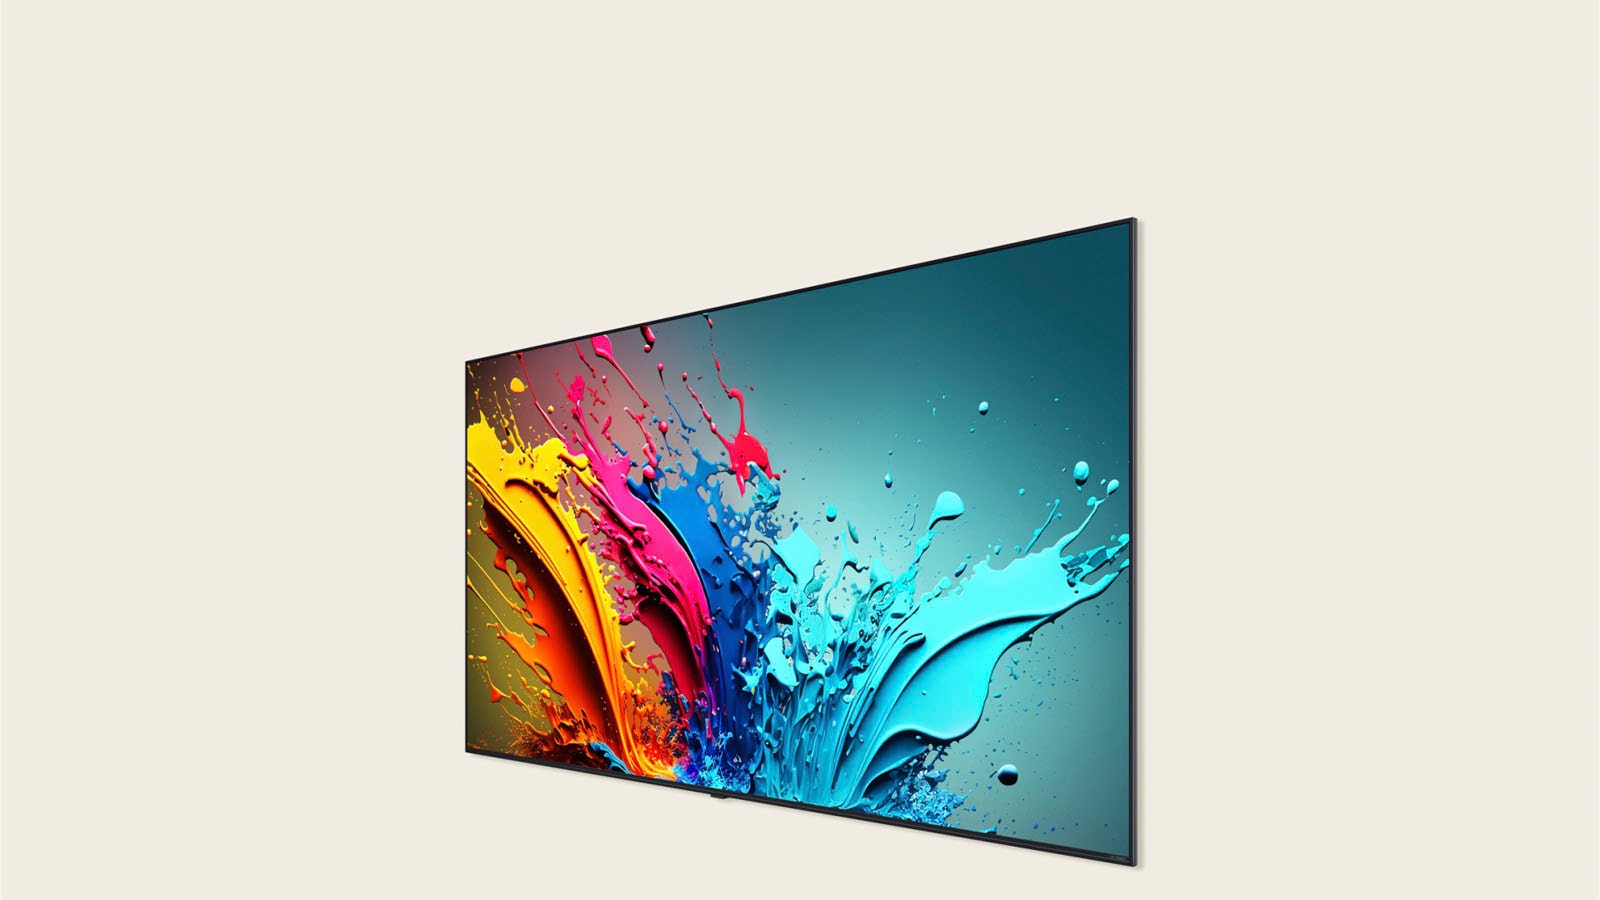 LG QNED85 螢幕顯示色彩繽紛的藝術作品。